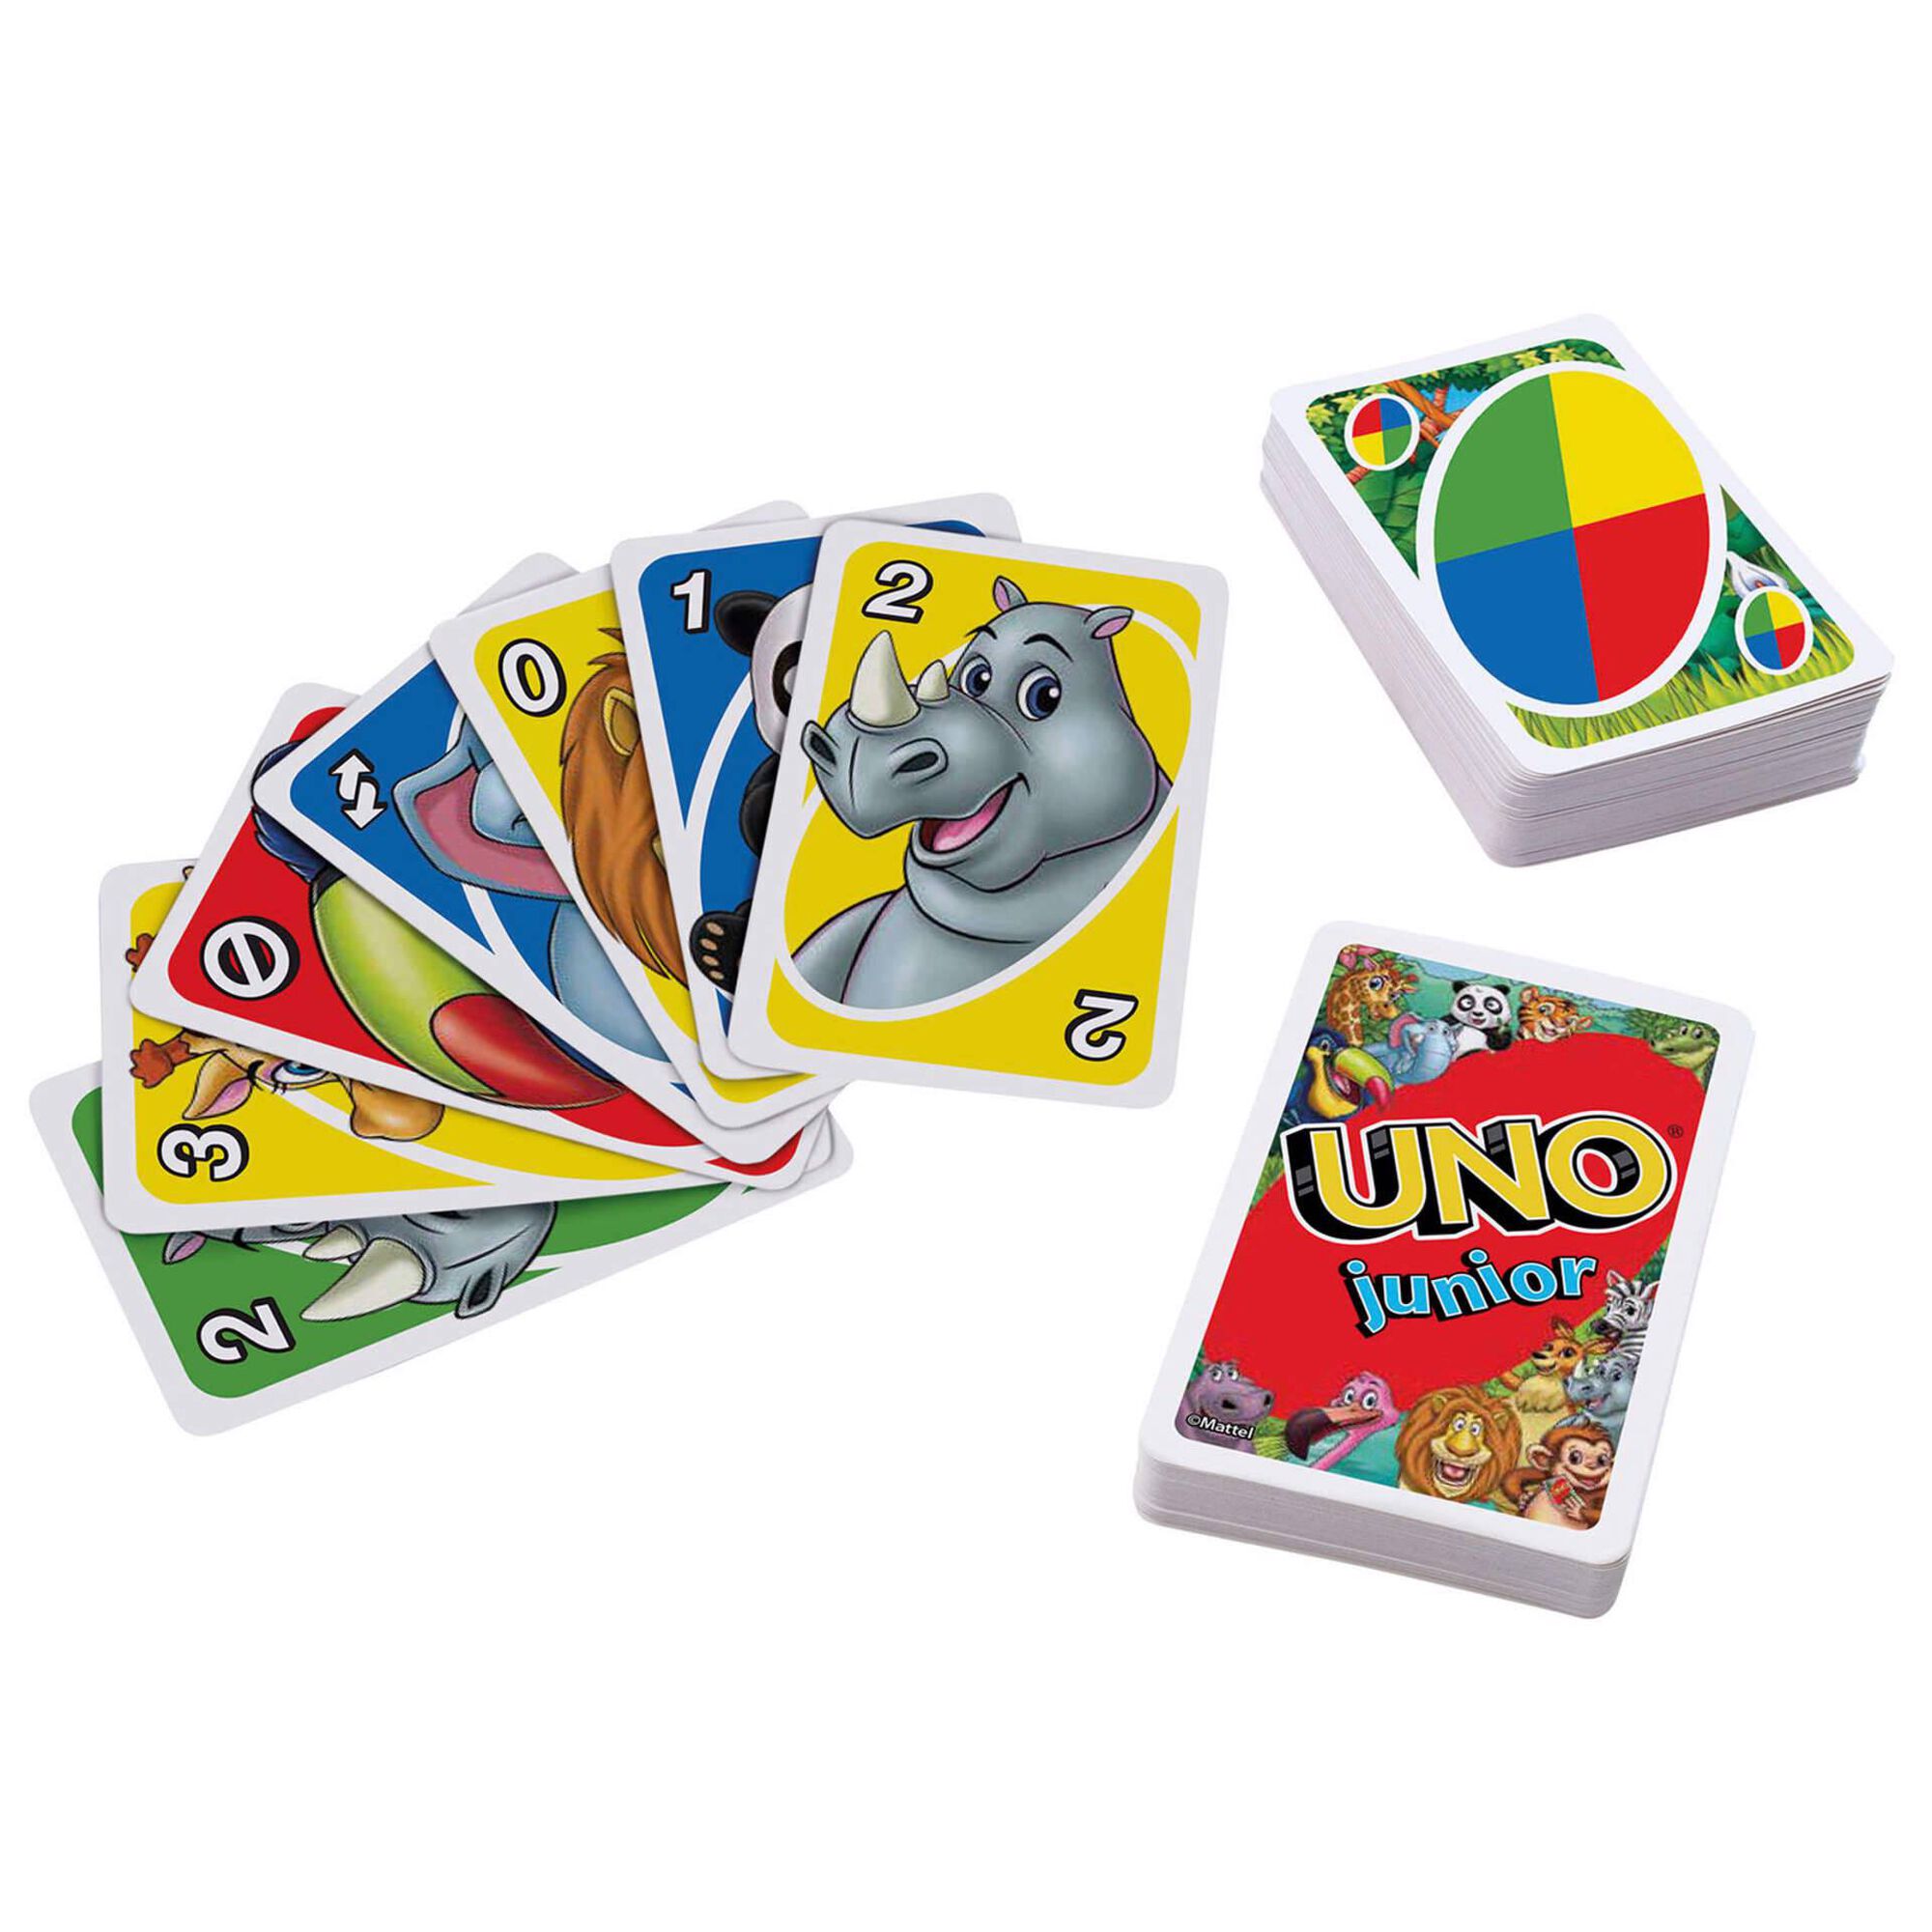 Jogo de Cartas UNO, Brinquedo para Crianças e Adultos, Jogo de